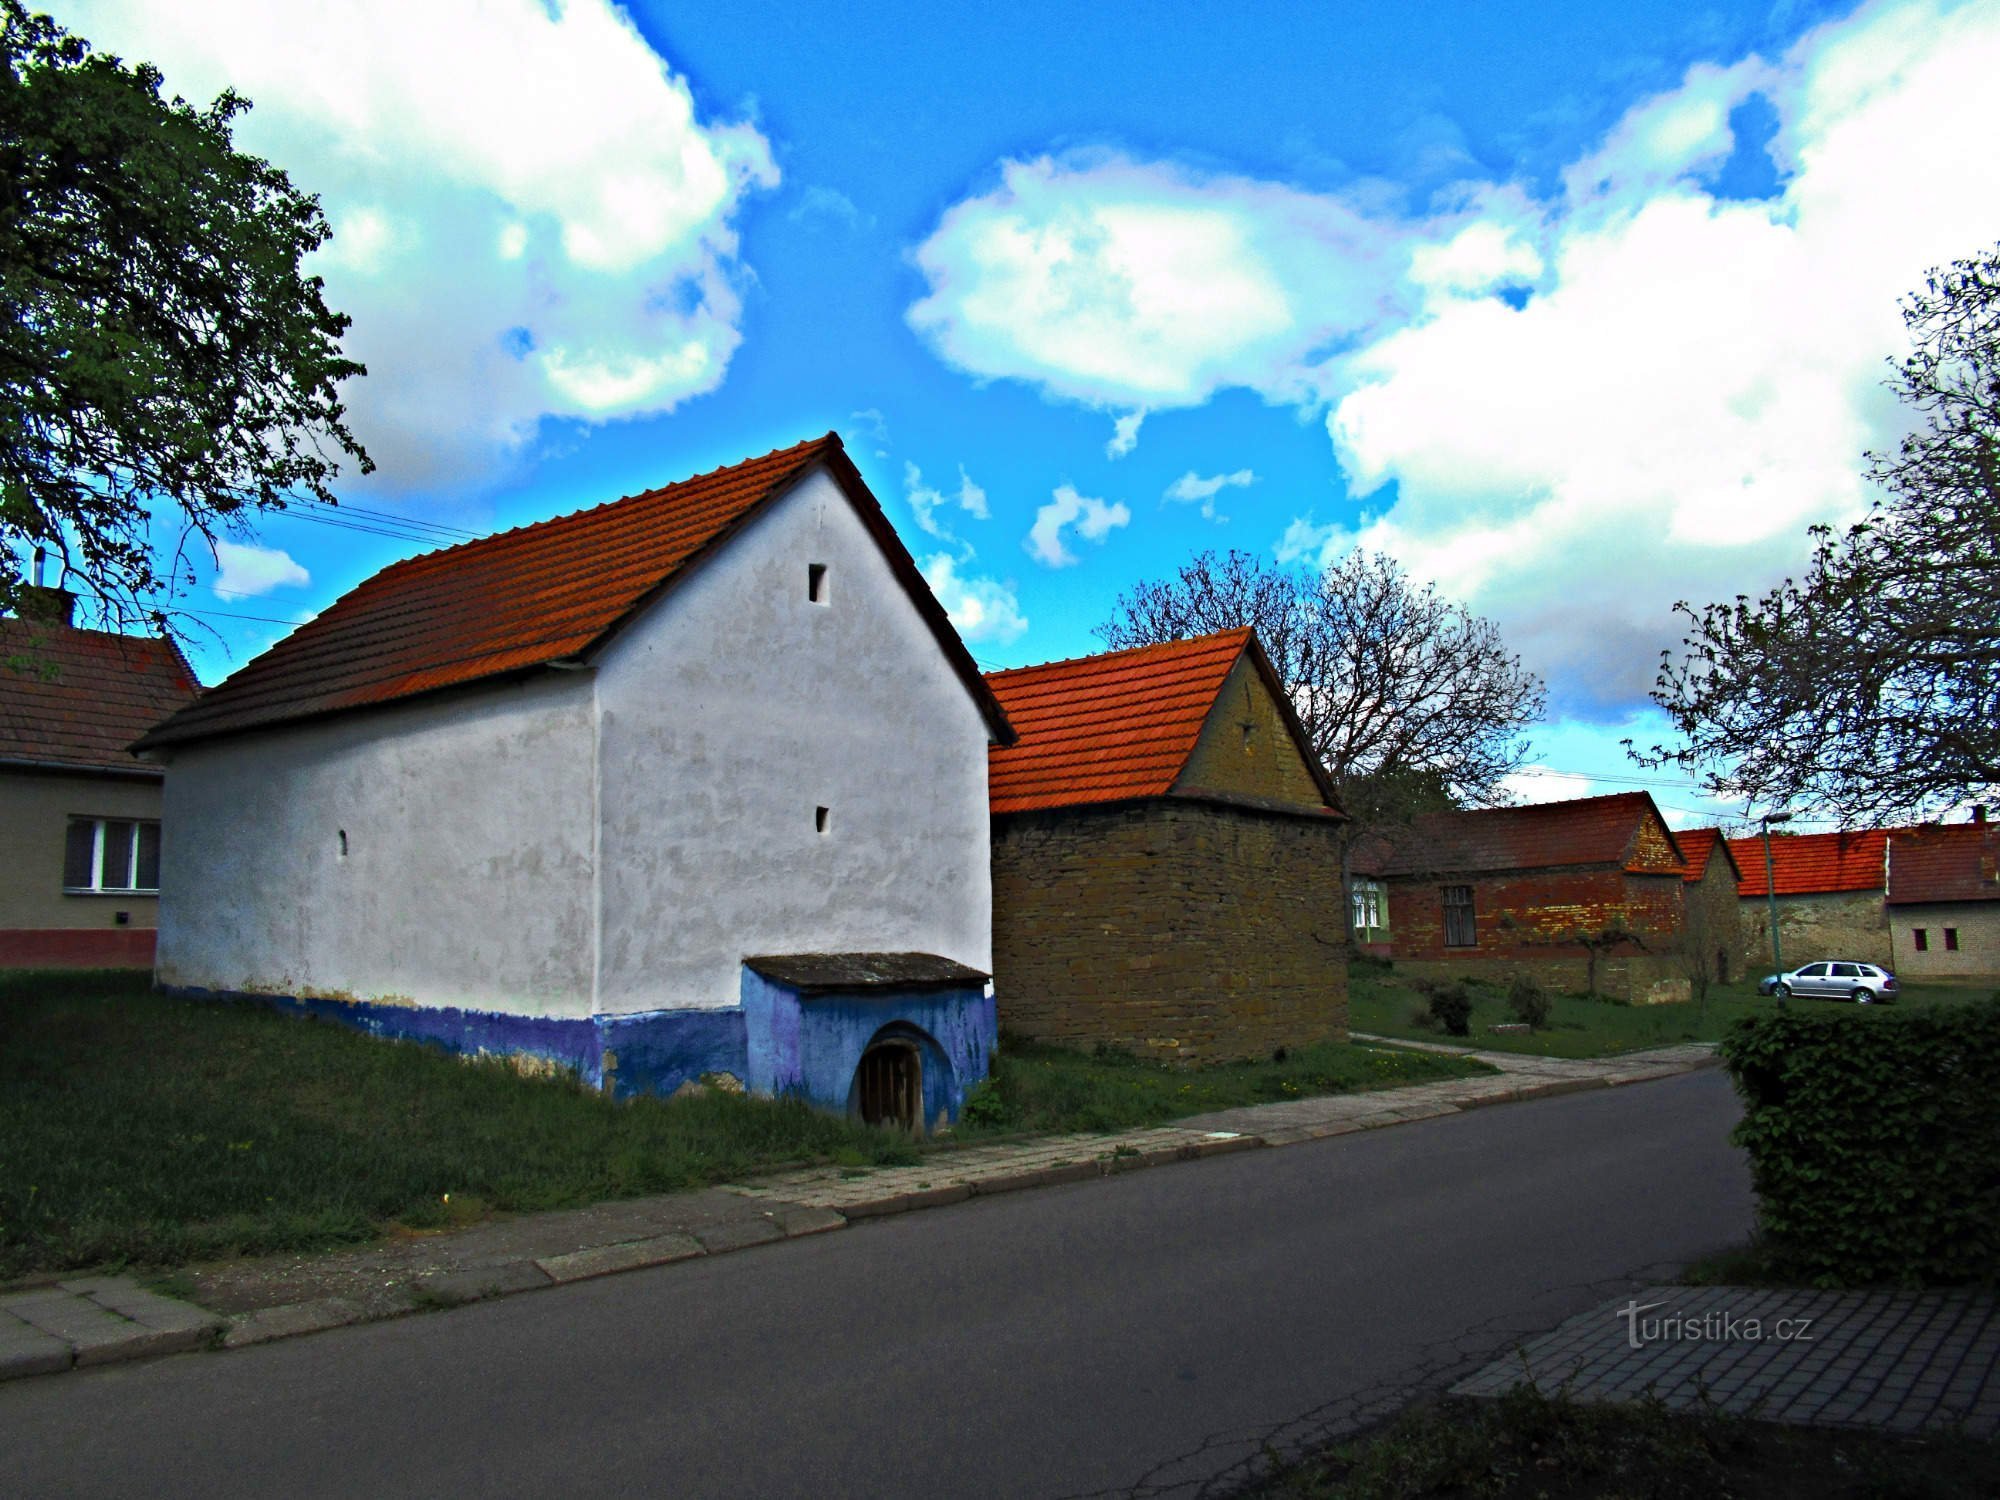 Häuser der Volksarchitektur im Dorf Hrubá Vrbka in Slovácko